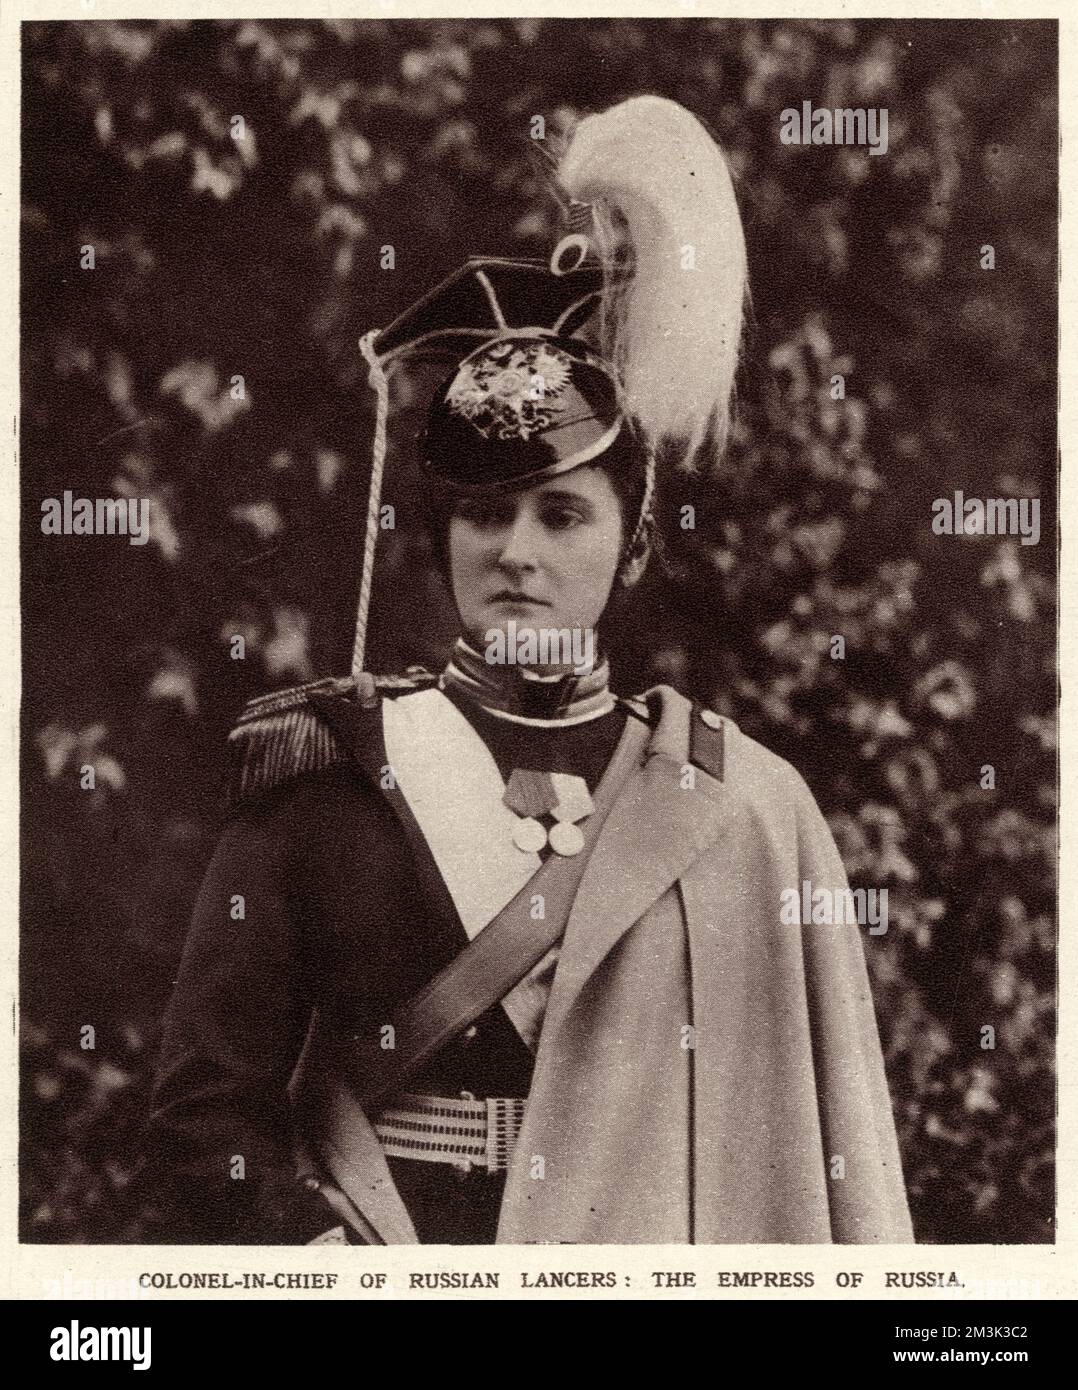 Alexandra Feodorowna (1872-1918), Kaiserin Russlands als Ehefrau von Nicholas II., in Uniform, Oberst der russischen Lancers. Datum: 1914 Stockfoto